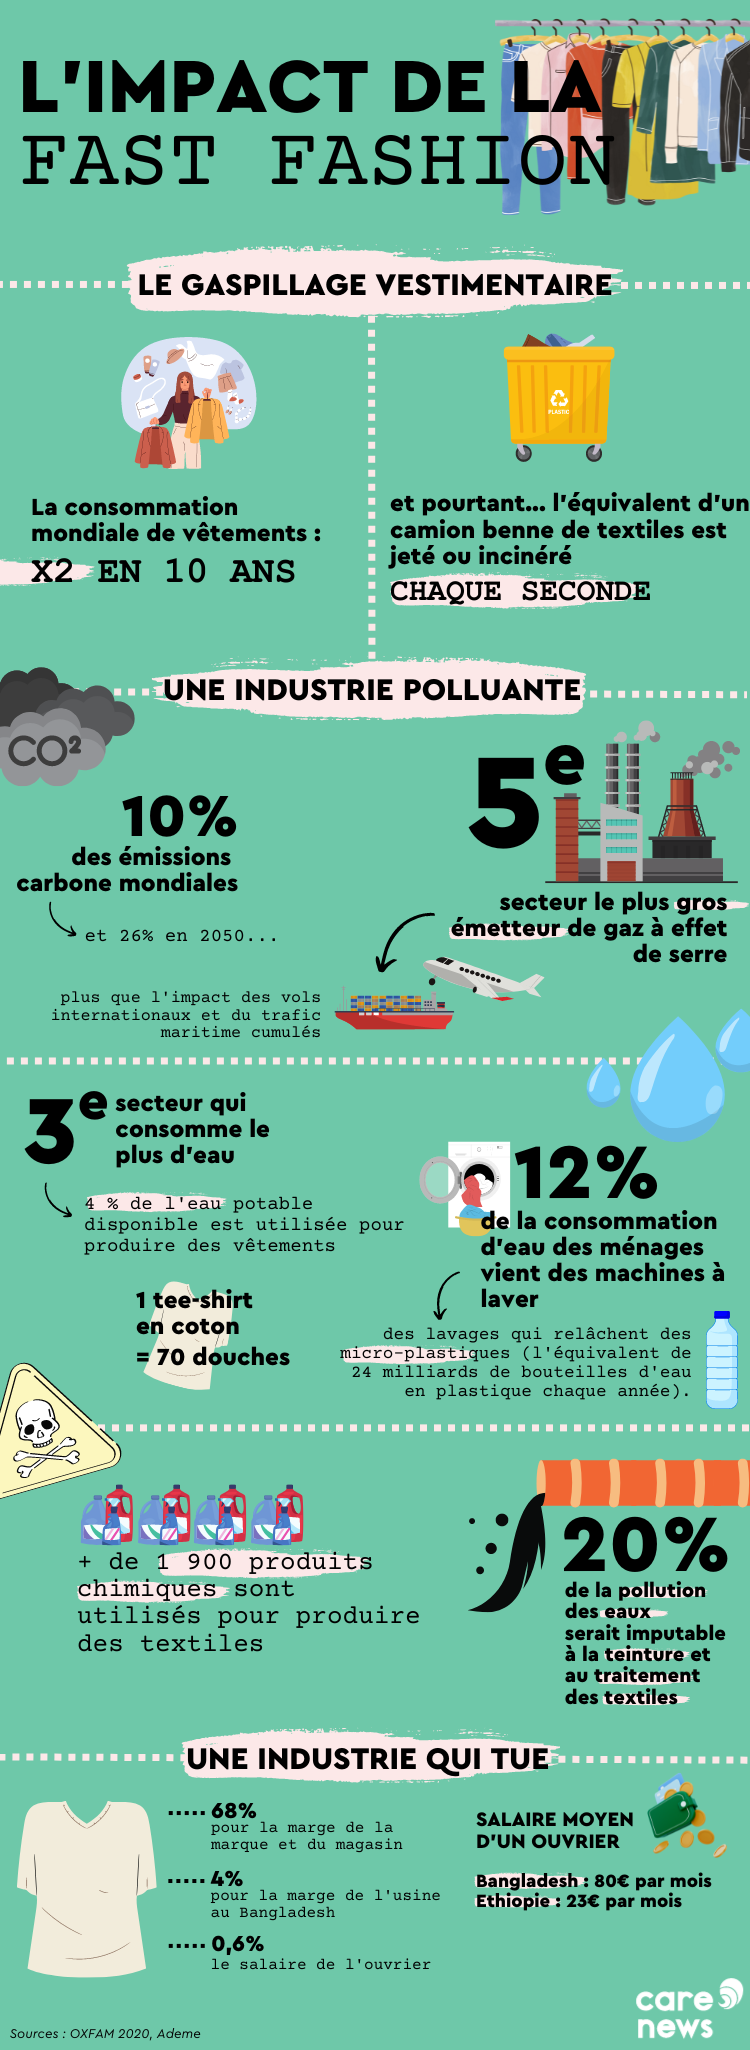 Infographie sur l'impact environnemental et social de la mode.